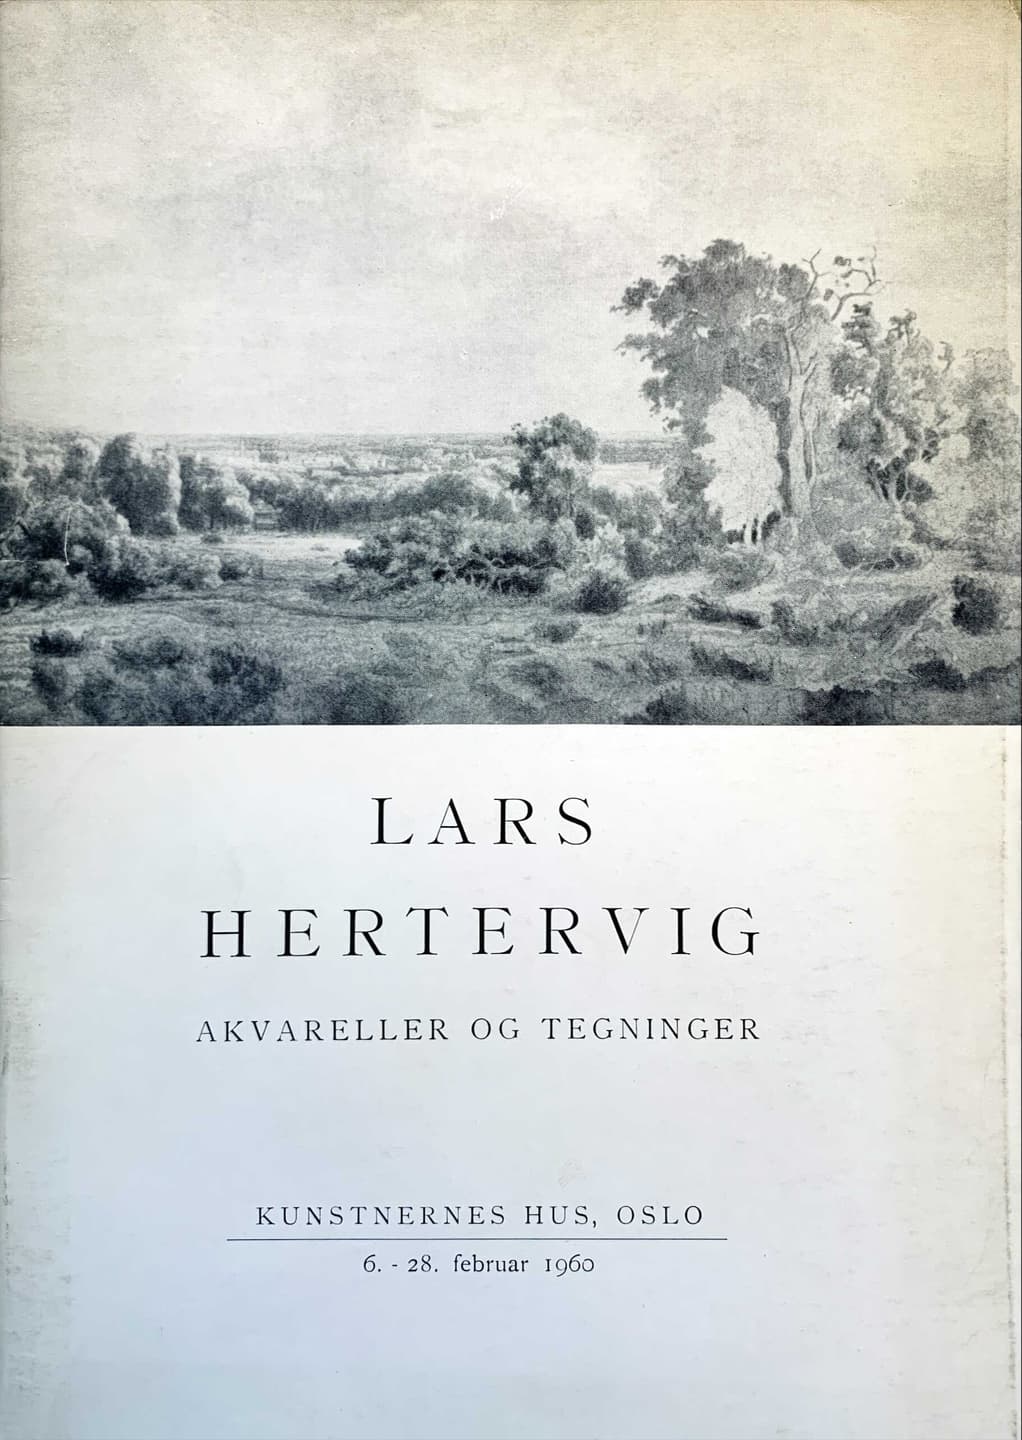 Lars Hjertevig